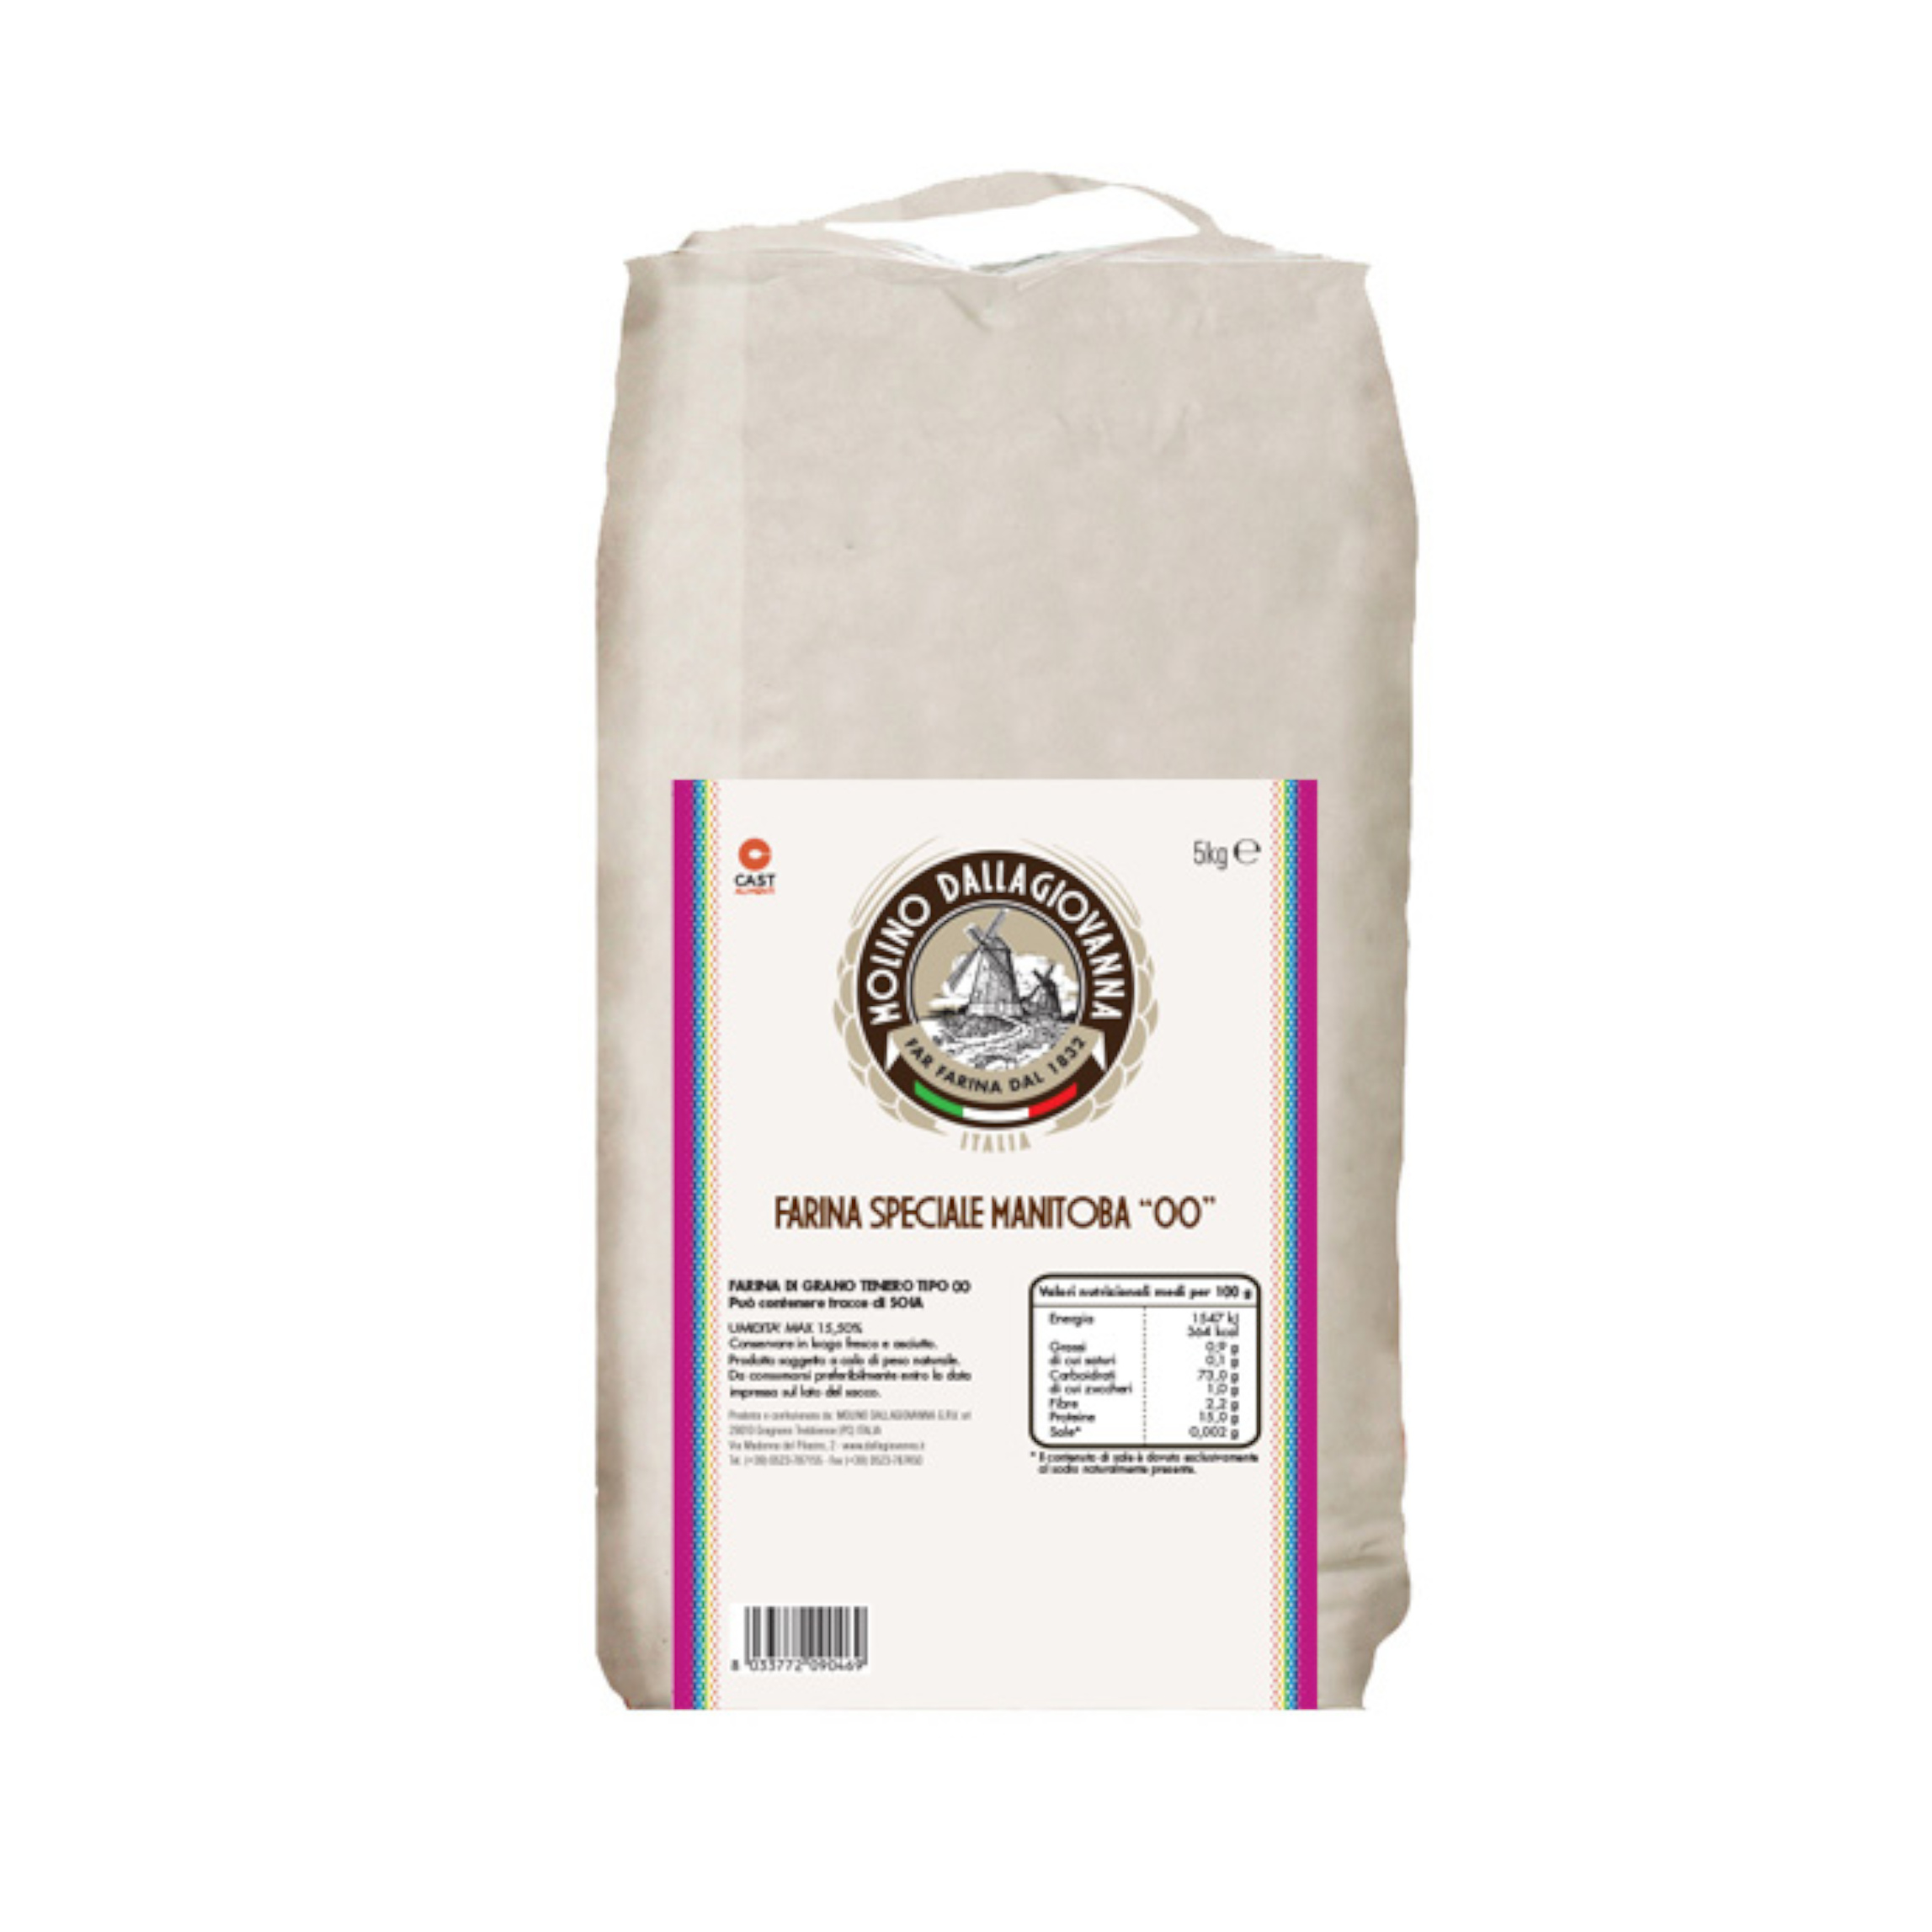 Farina “0” Manitoba sacco da 25kg